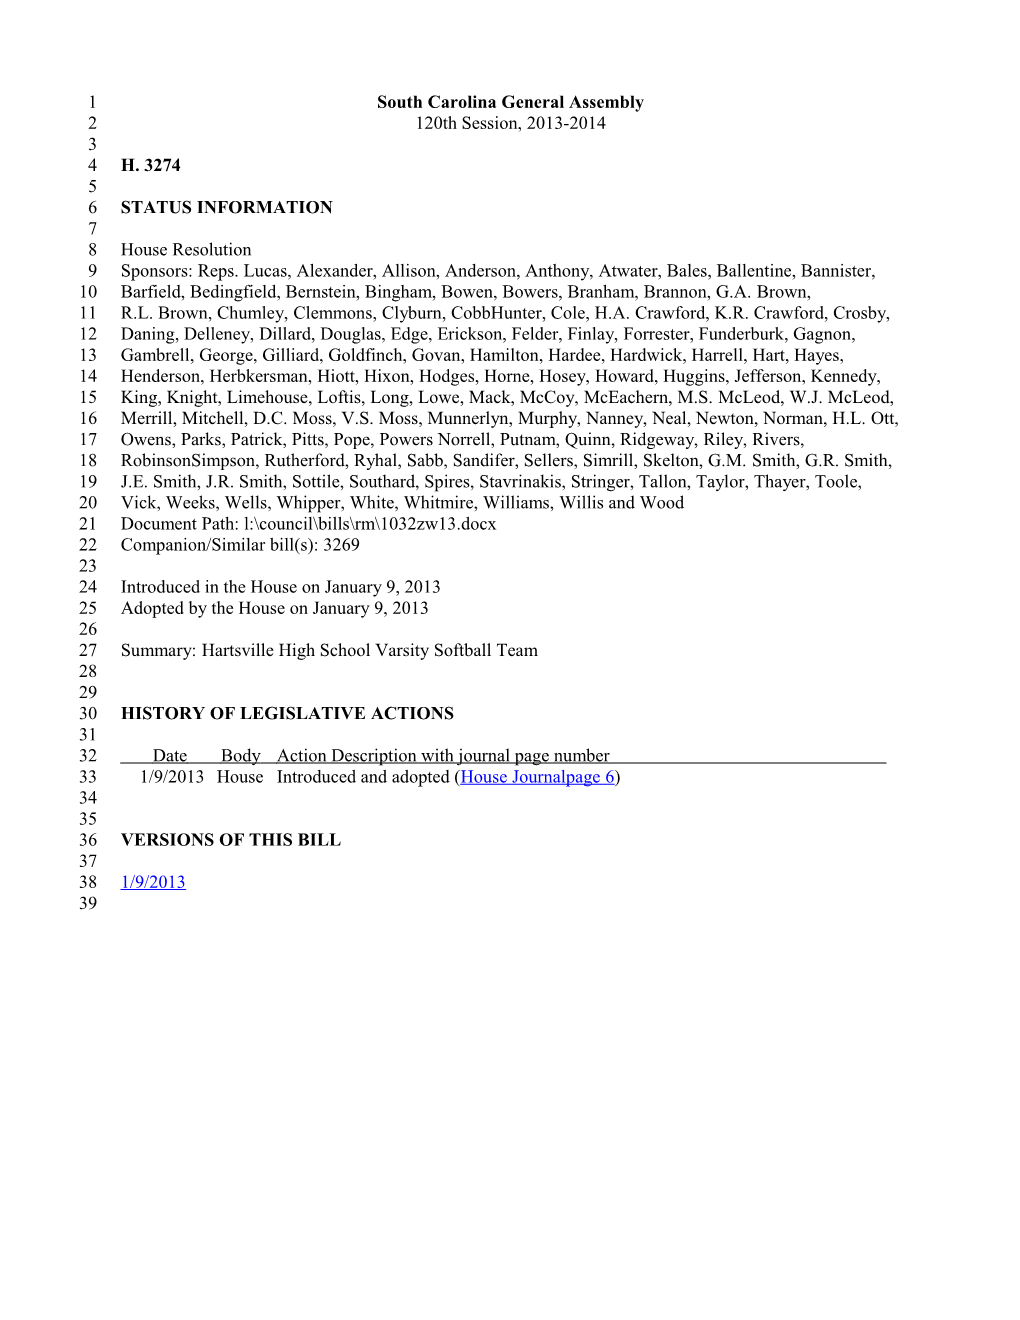 2013-2014 Bill 3274: Hartsville High School Varsity Softball Team - South Carolina Legislature